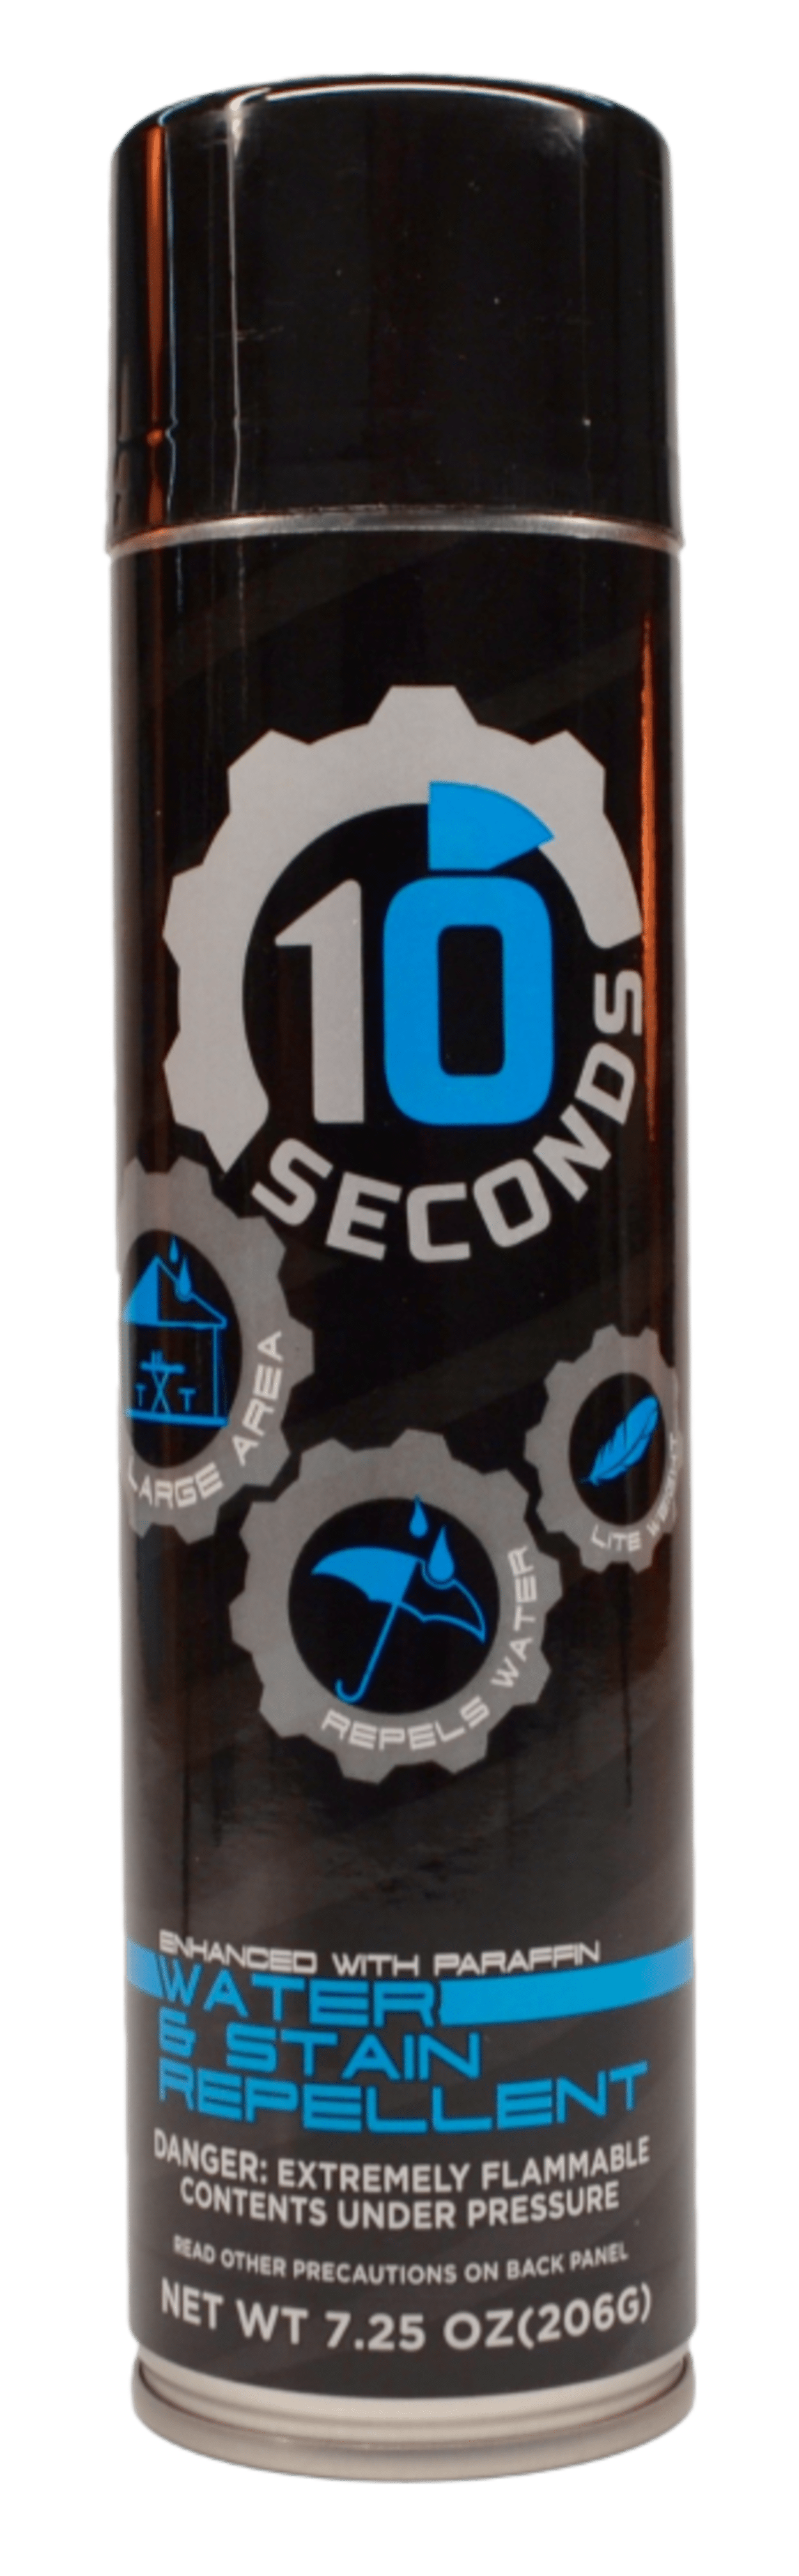 10 Seconds ® Water Repellent Spray – Tenseconds